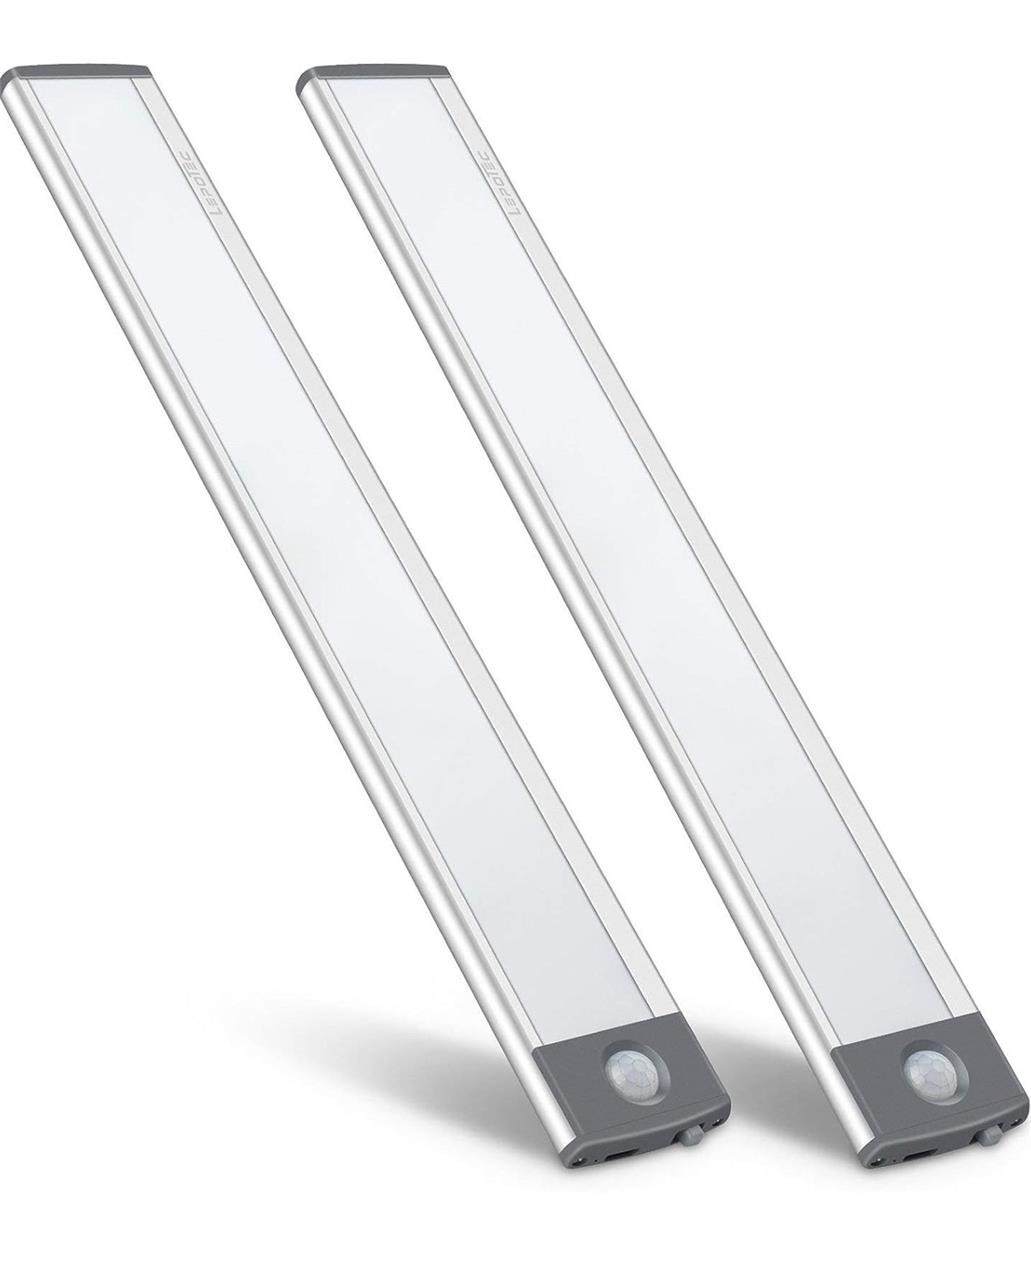 ($49) LED Motion Sensor Light,Under Counter